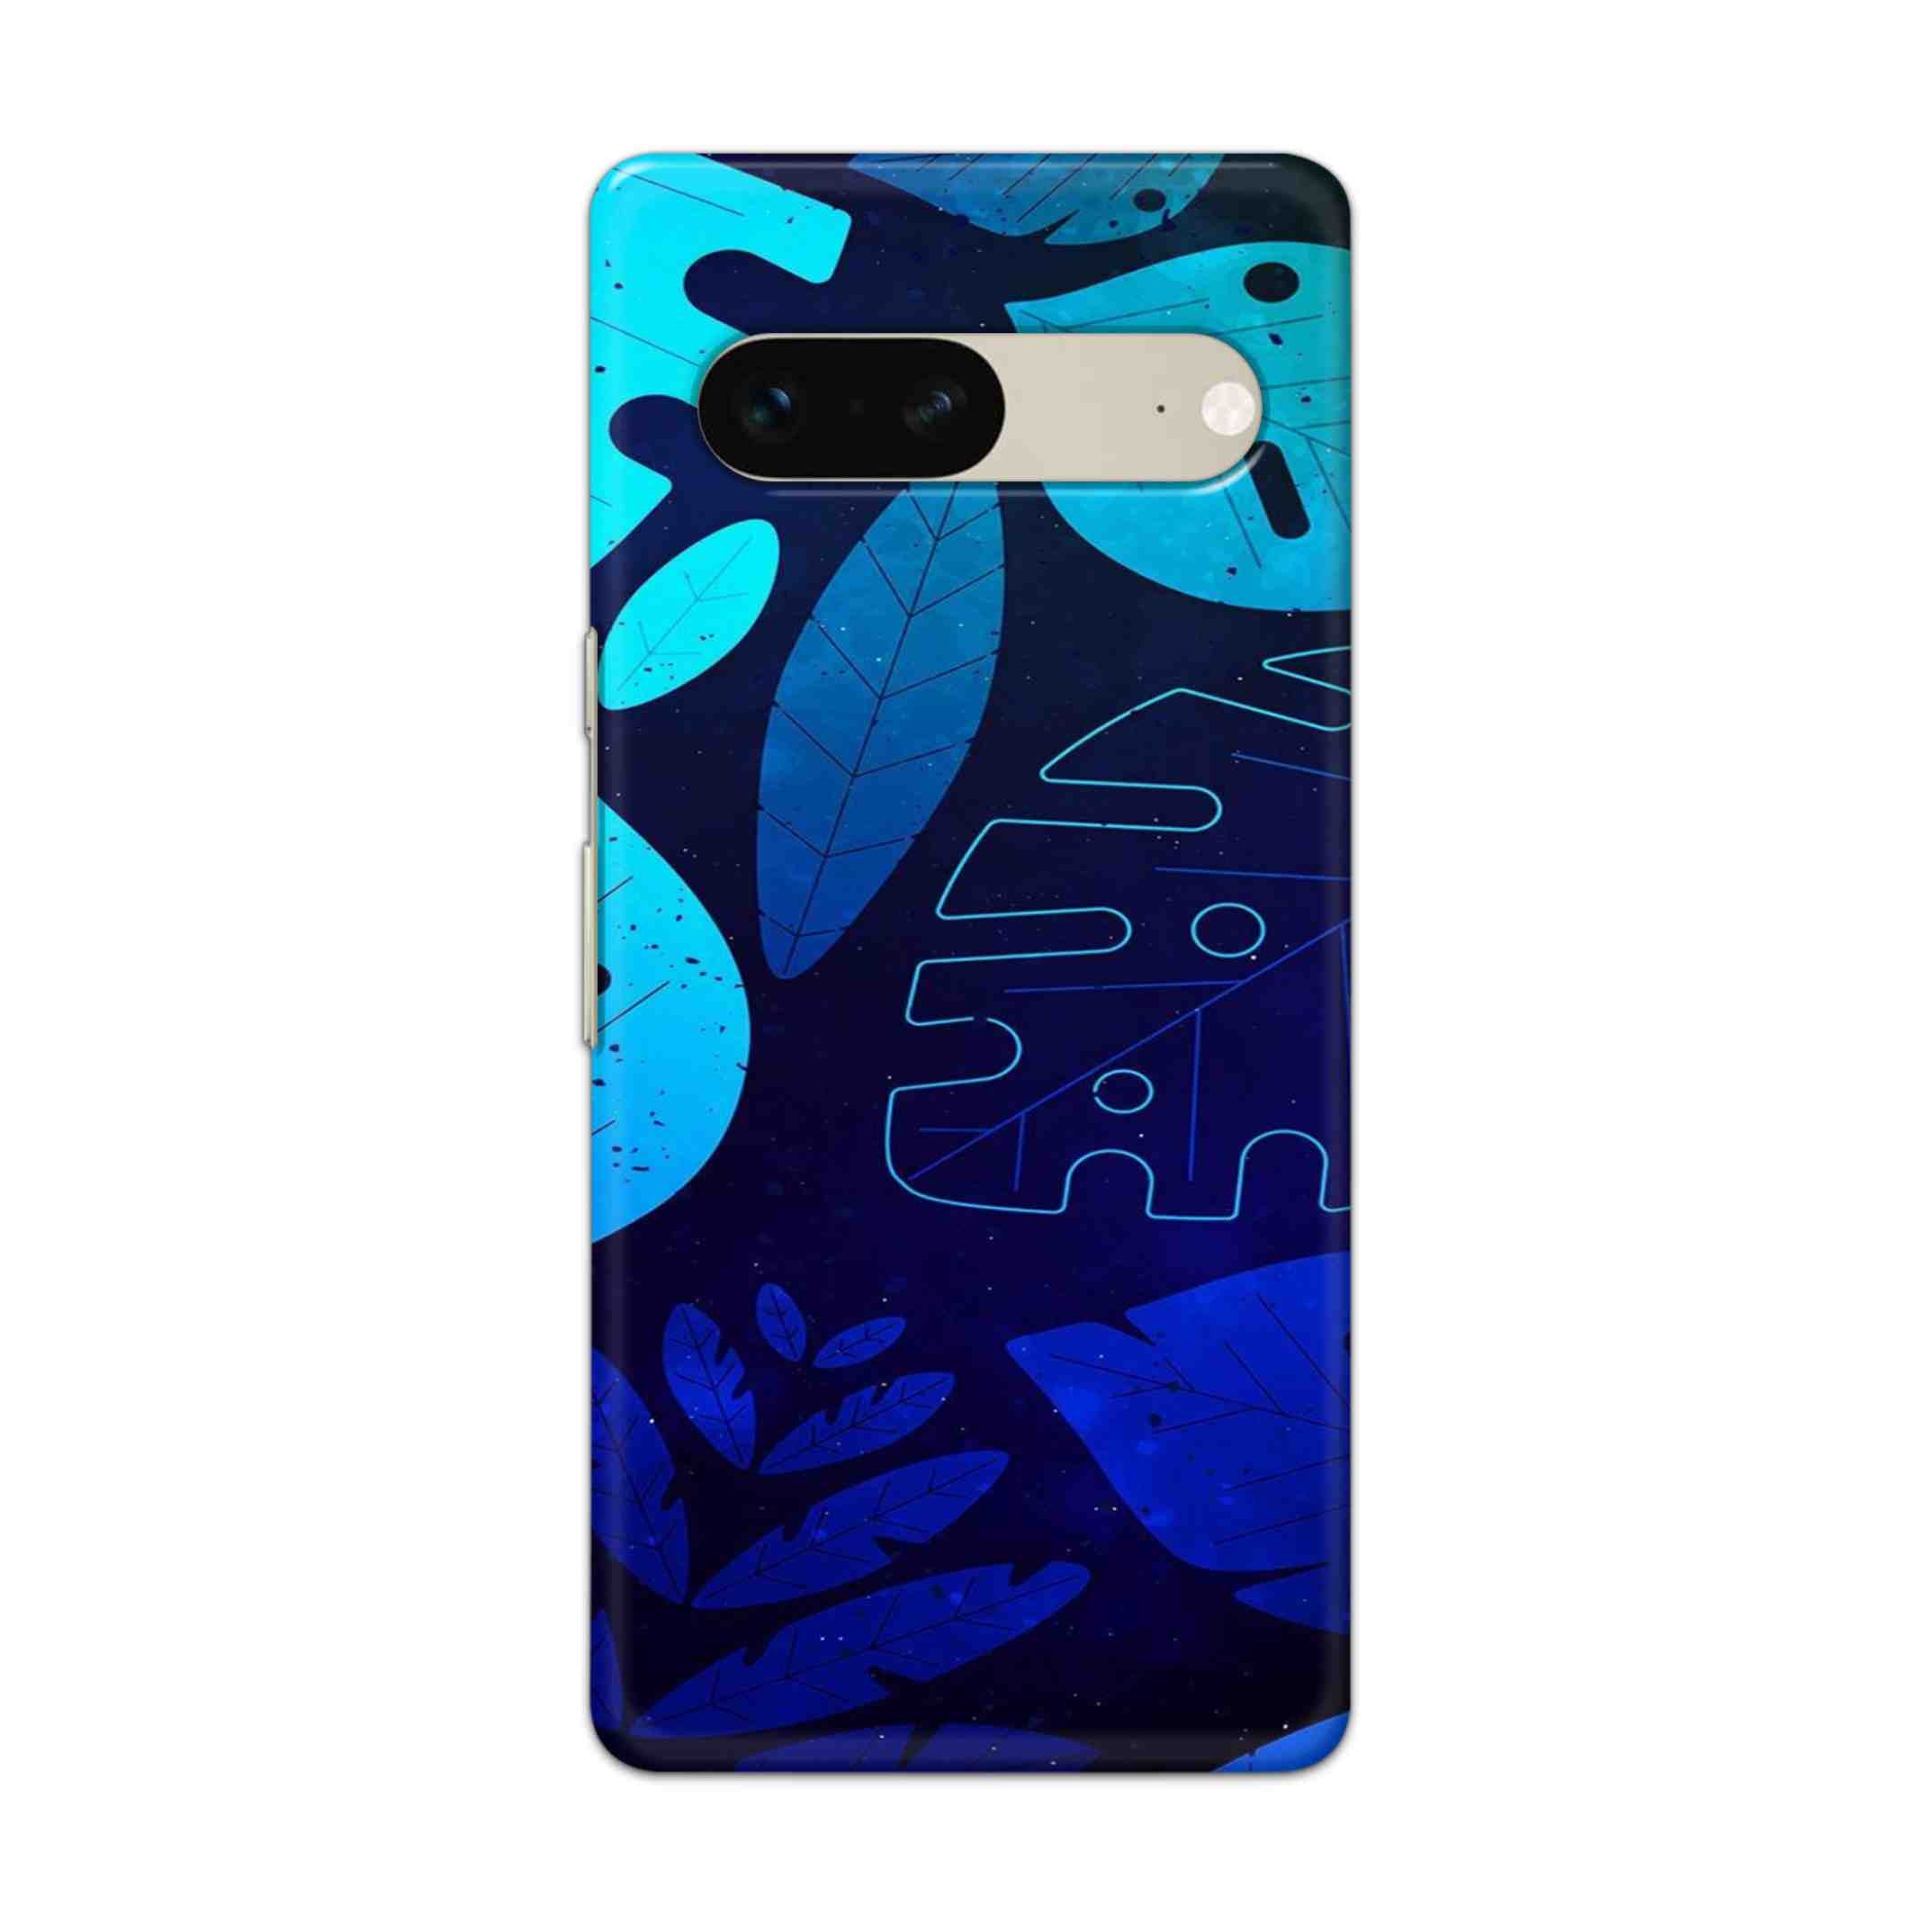 Buy Neon Leaf Hard Back Mobile Phone Case Cover For Google Pixel 7 Online